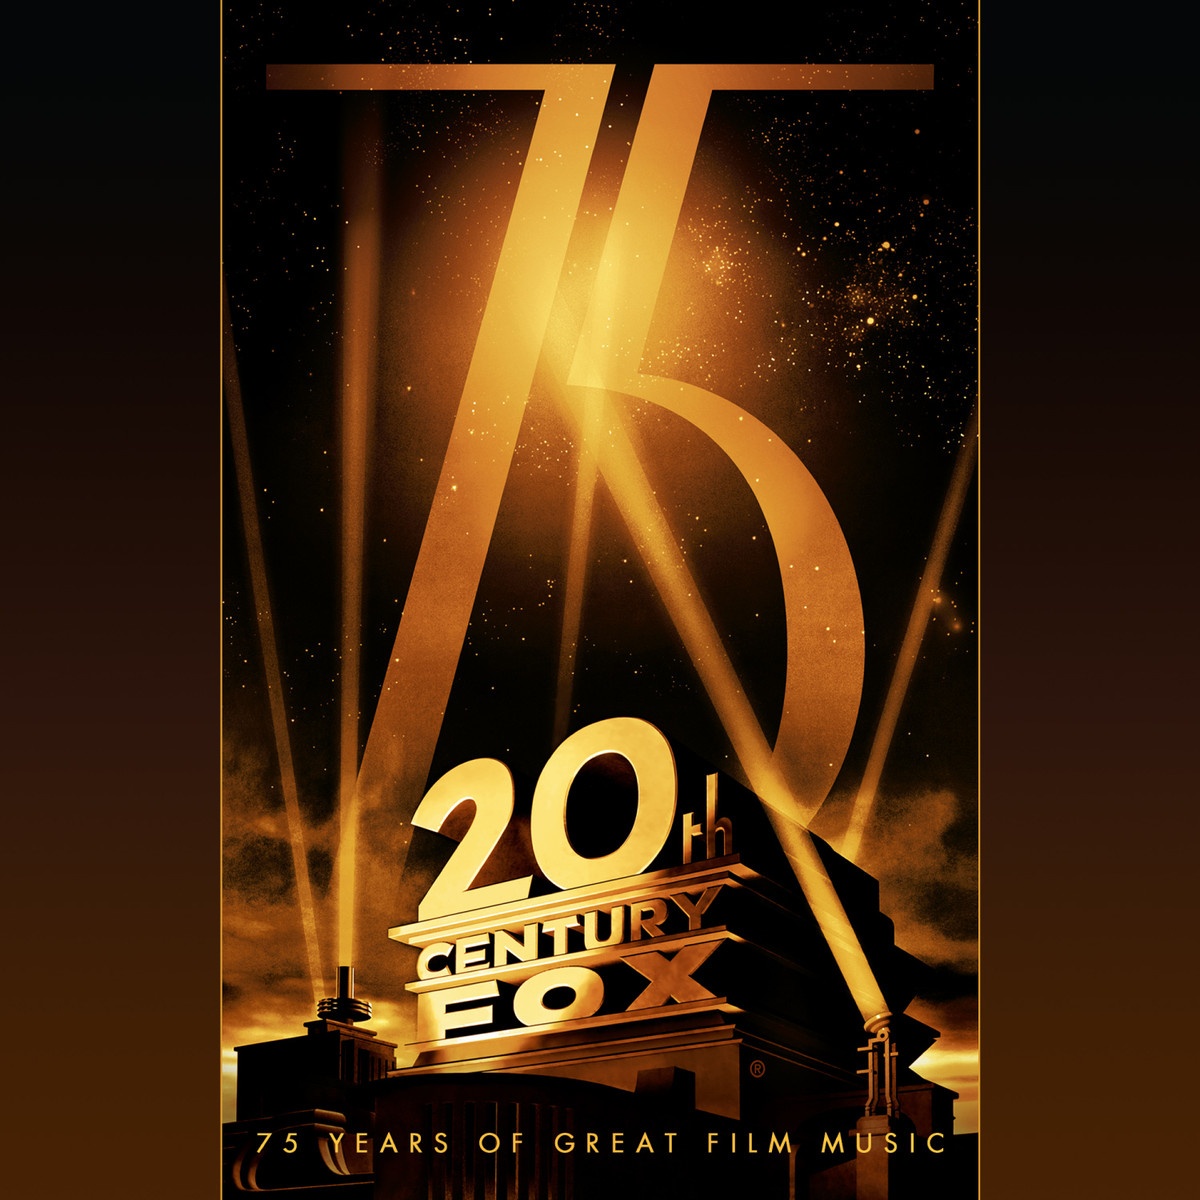 20th Century Fox - 75 Years Of Great Film Music